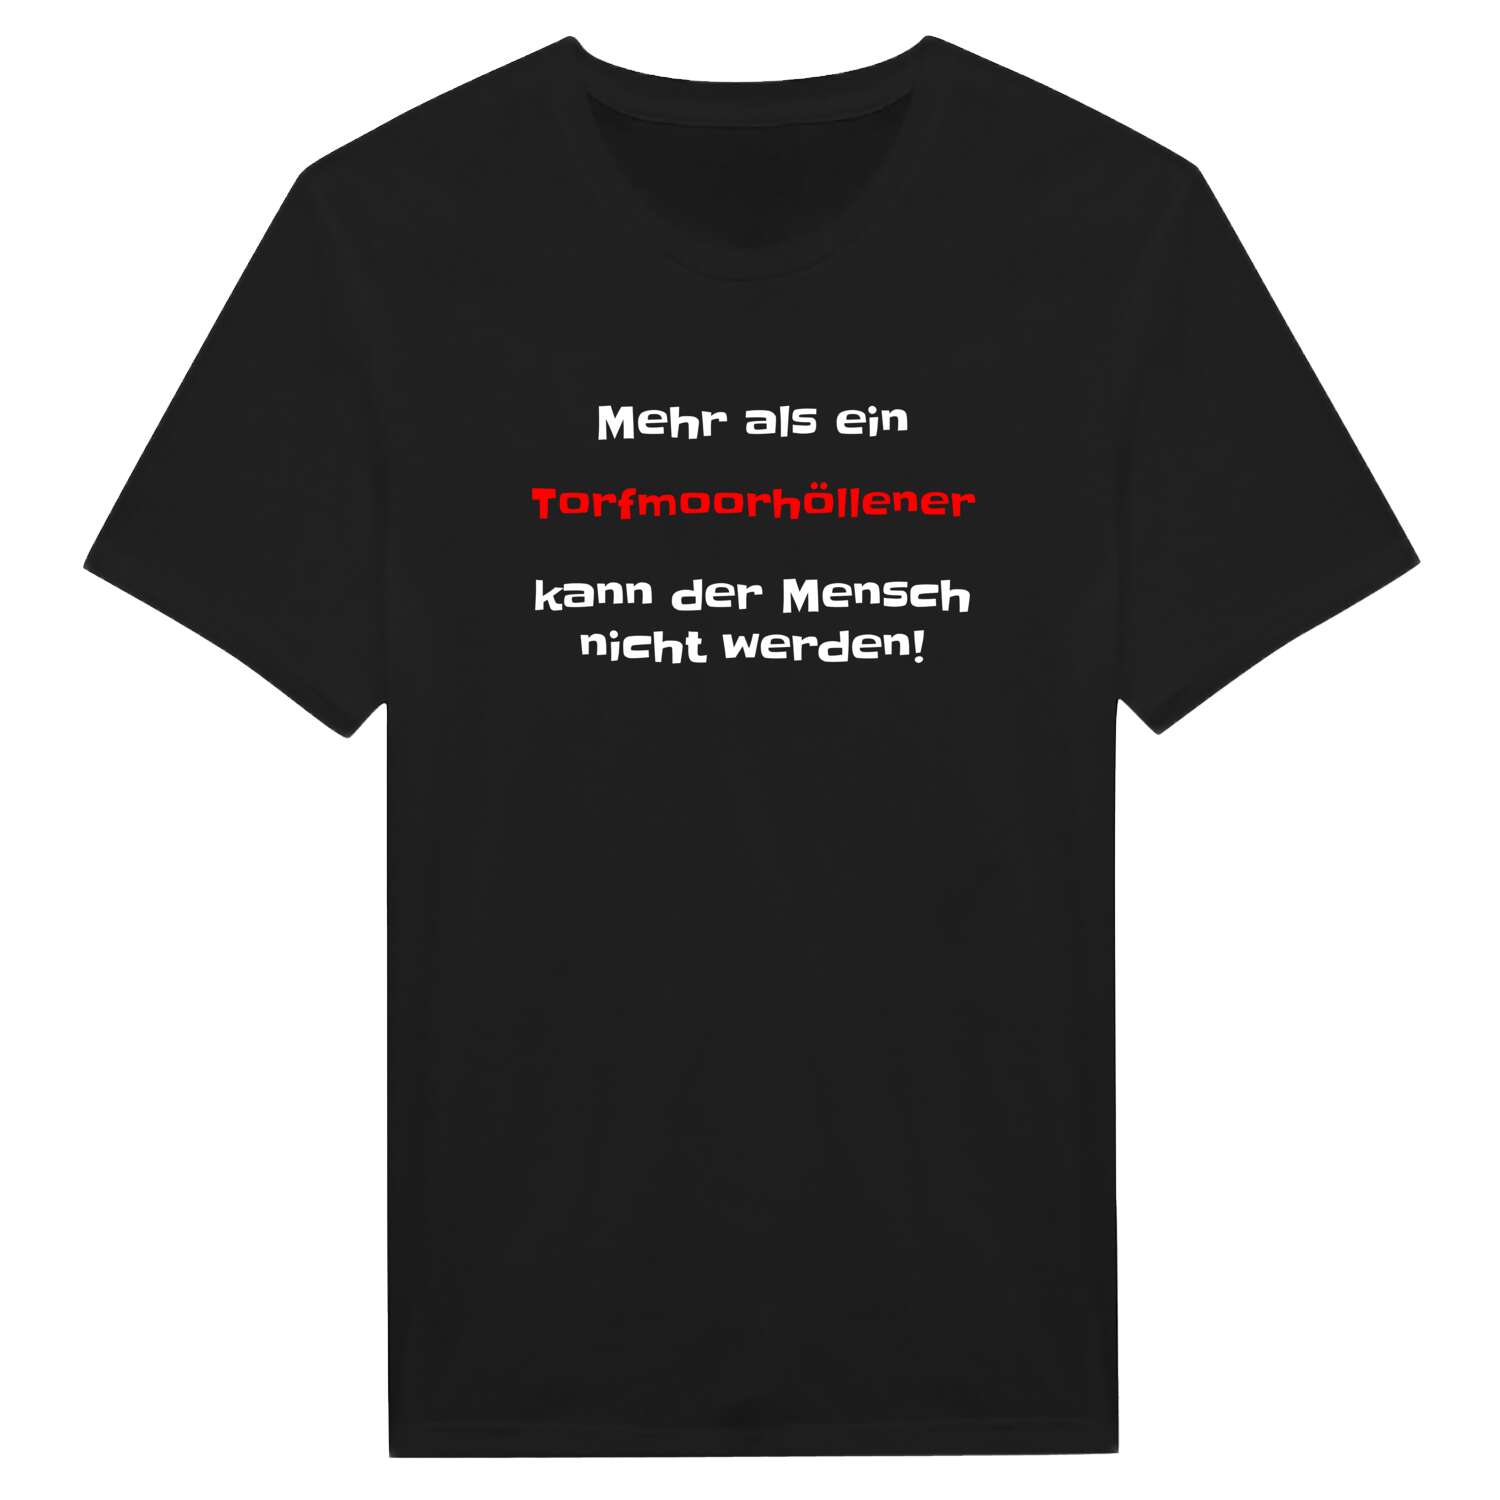 Torfmoorhölle T-Shirt »Mehr als ein«